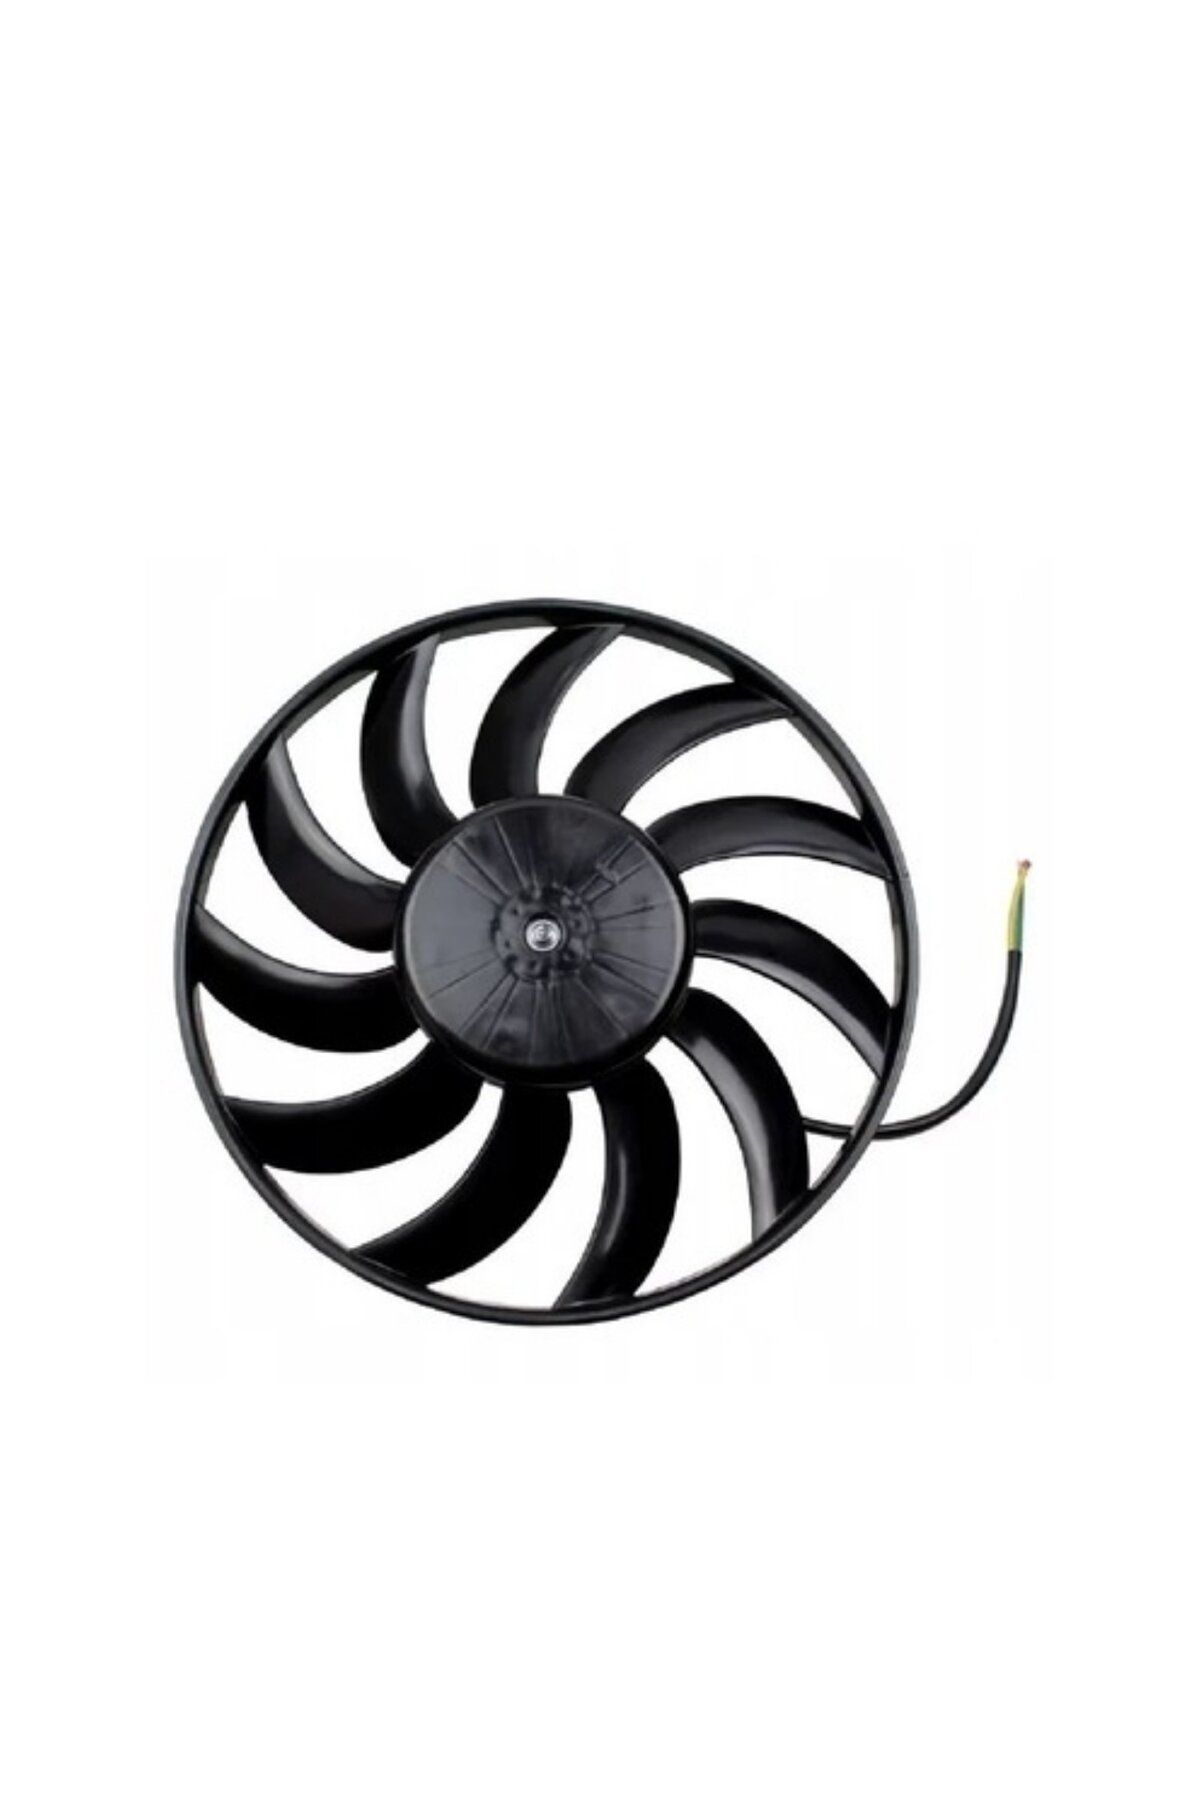 Wisco Fan Motoru Davlumbazsız – 8E0959455A Wisco - Audı A4 A6 2.4 3.0 3.2 Asn 02 Ve Sonrası Uyumlu